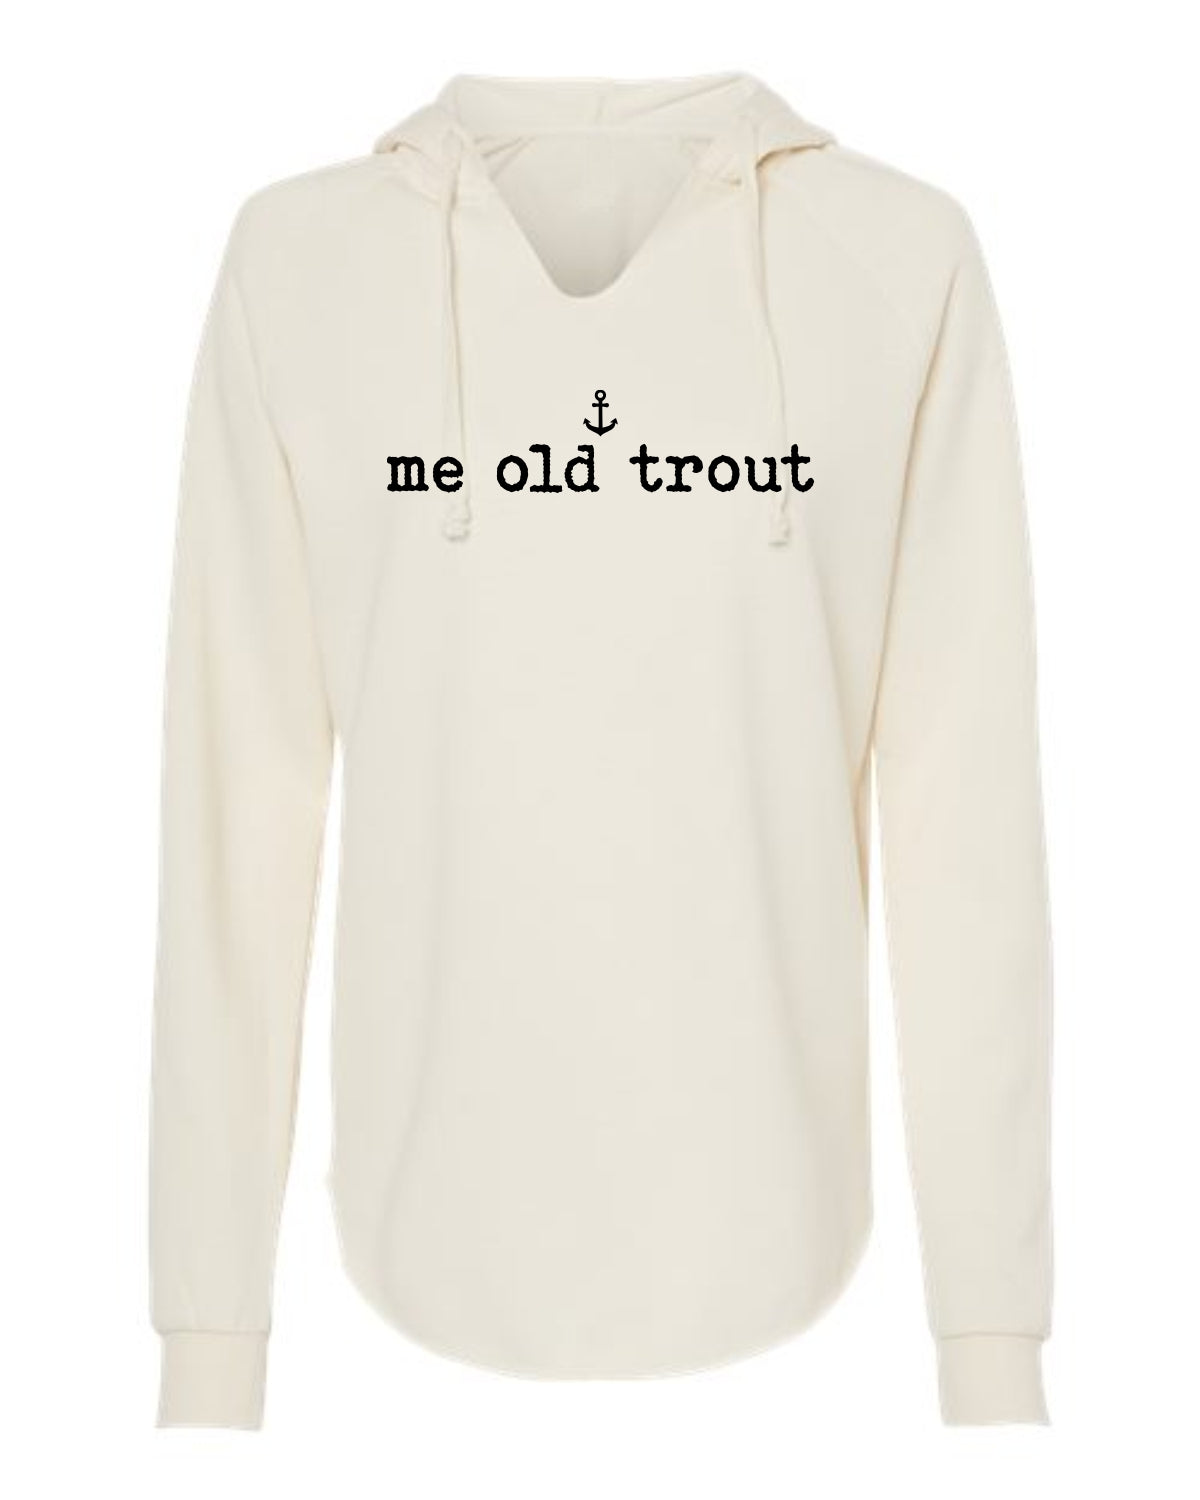 "Me Old Trout" Ladies' Hoodie